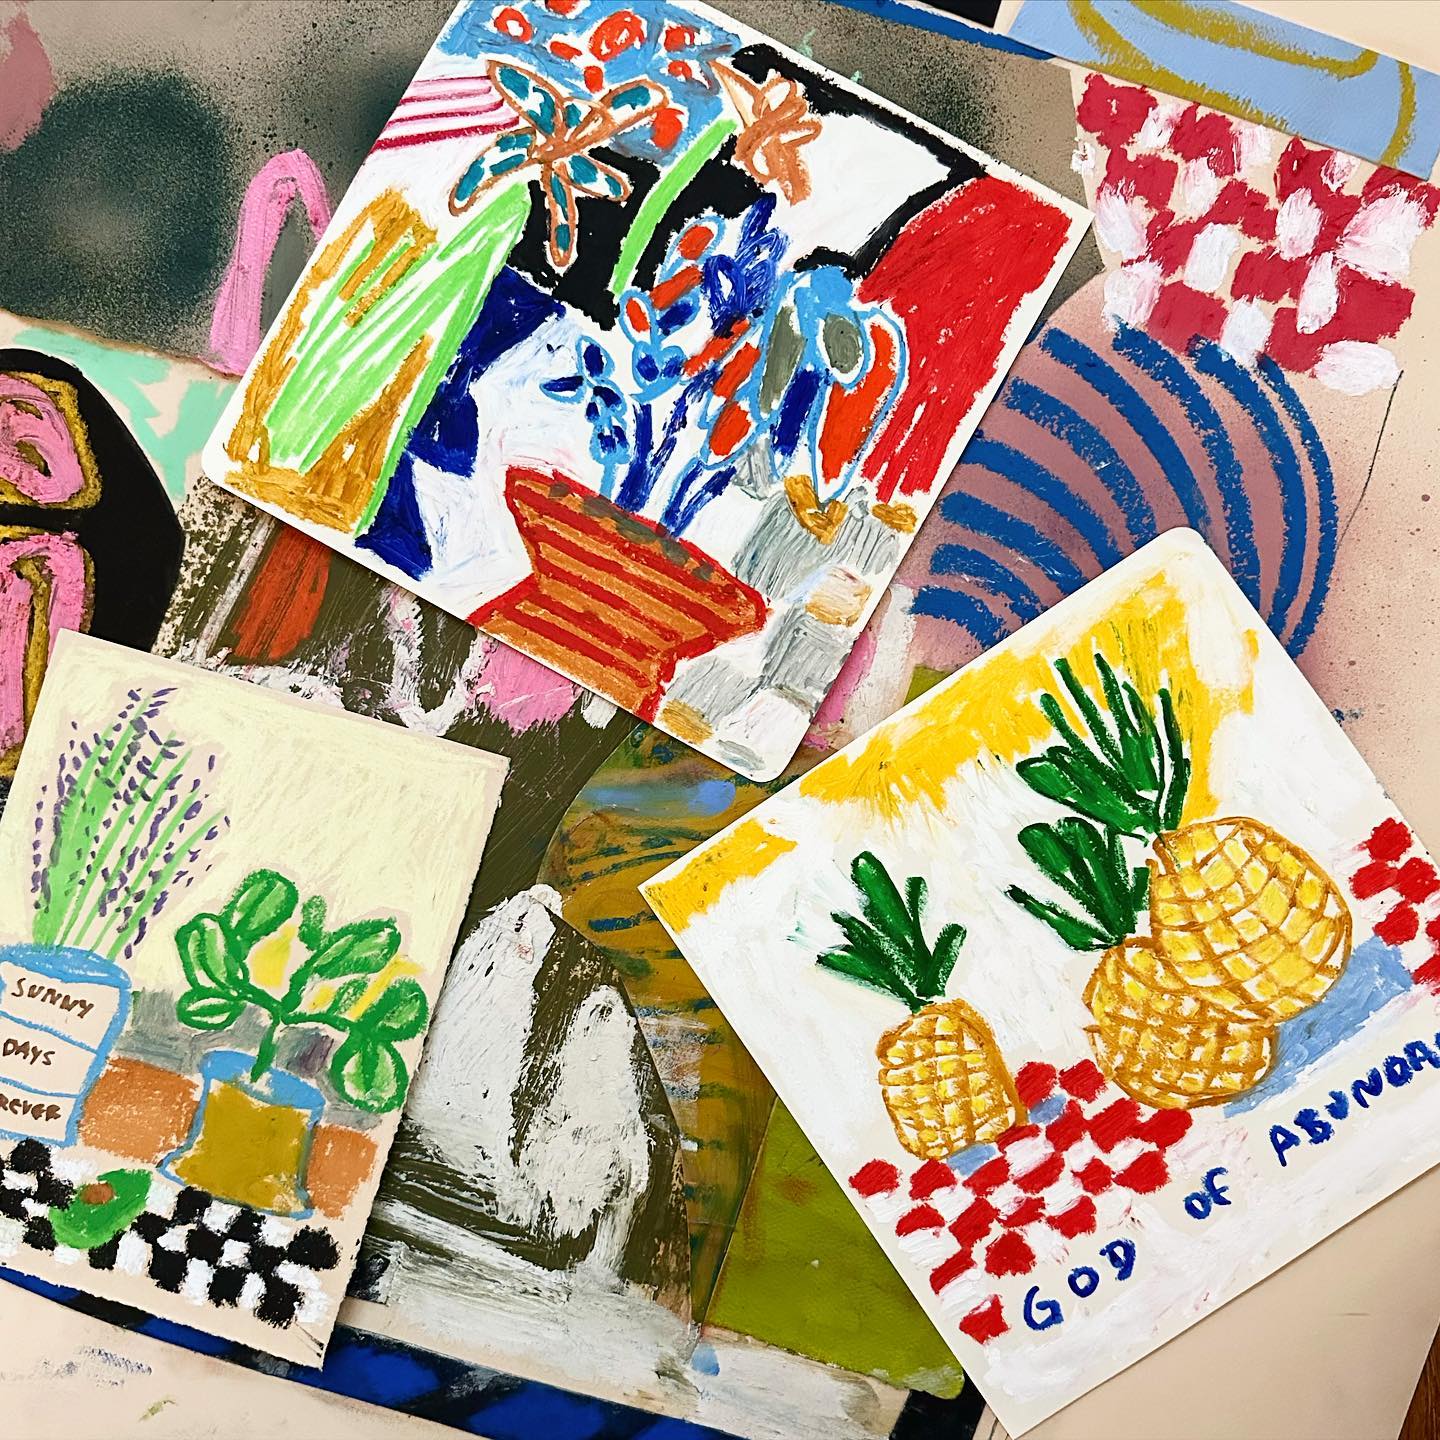 Plusieurs dessins très colorés sur un plan de travail. On observe des éléments tels que des vases avec des fleurs, des ananas etc.